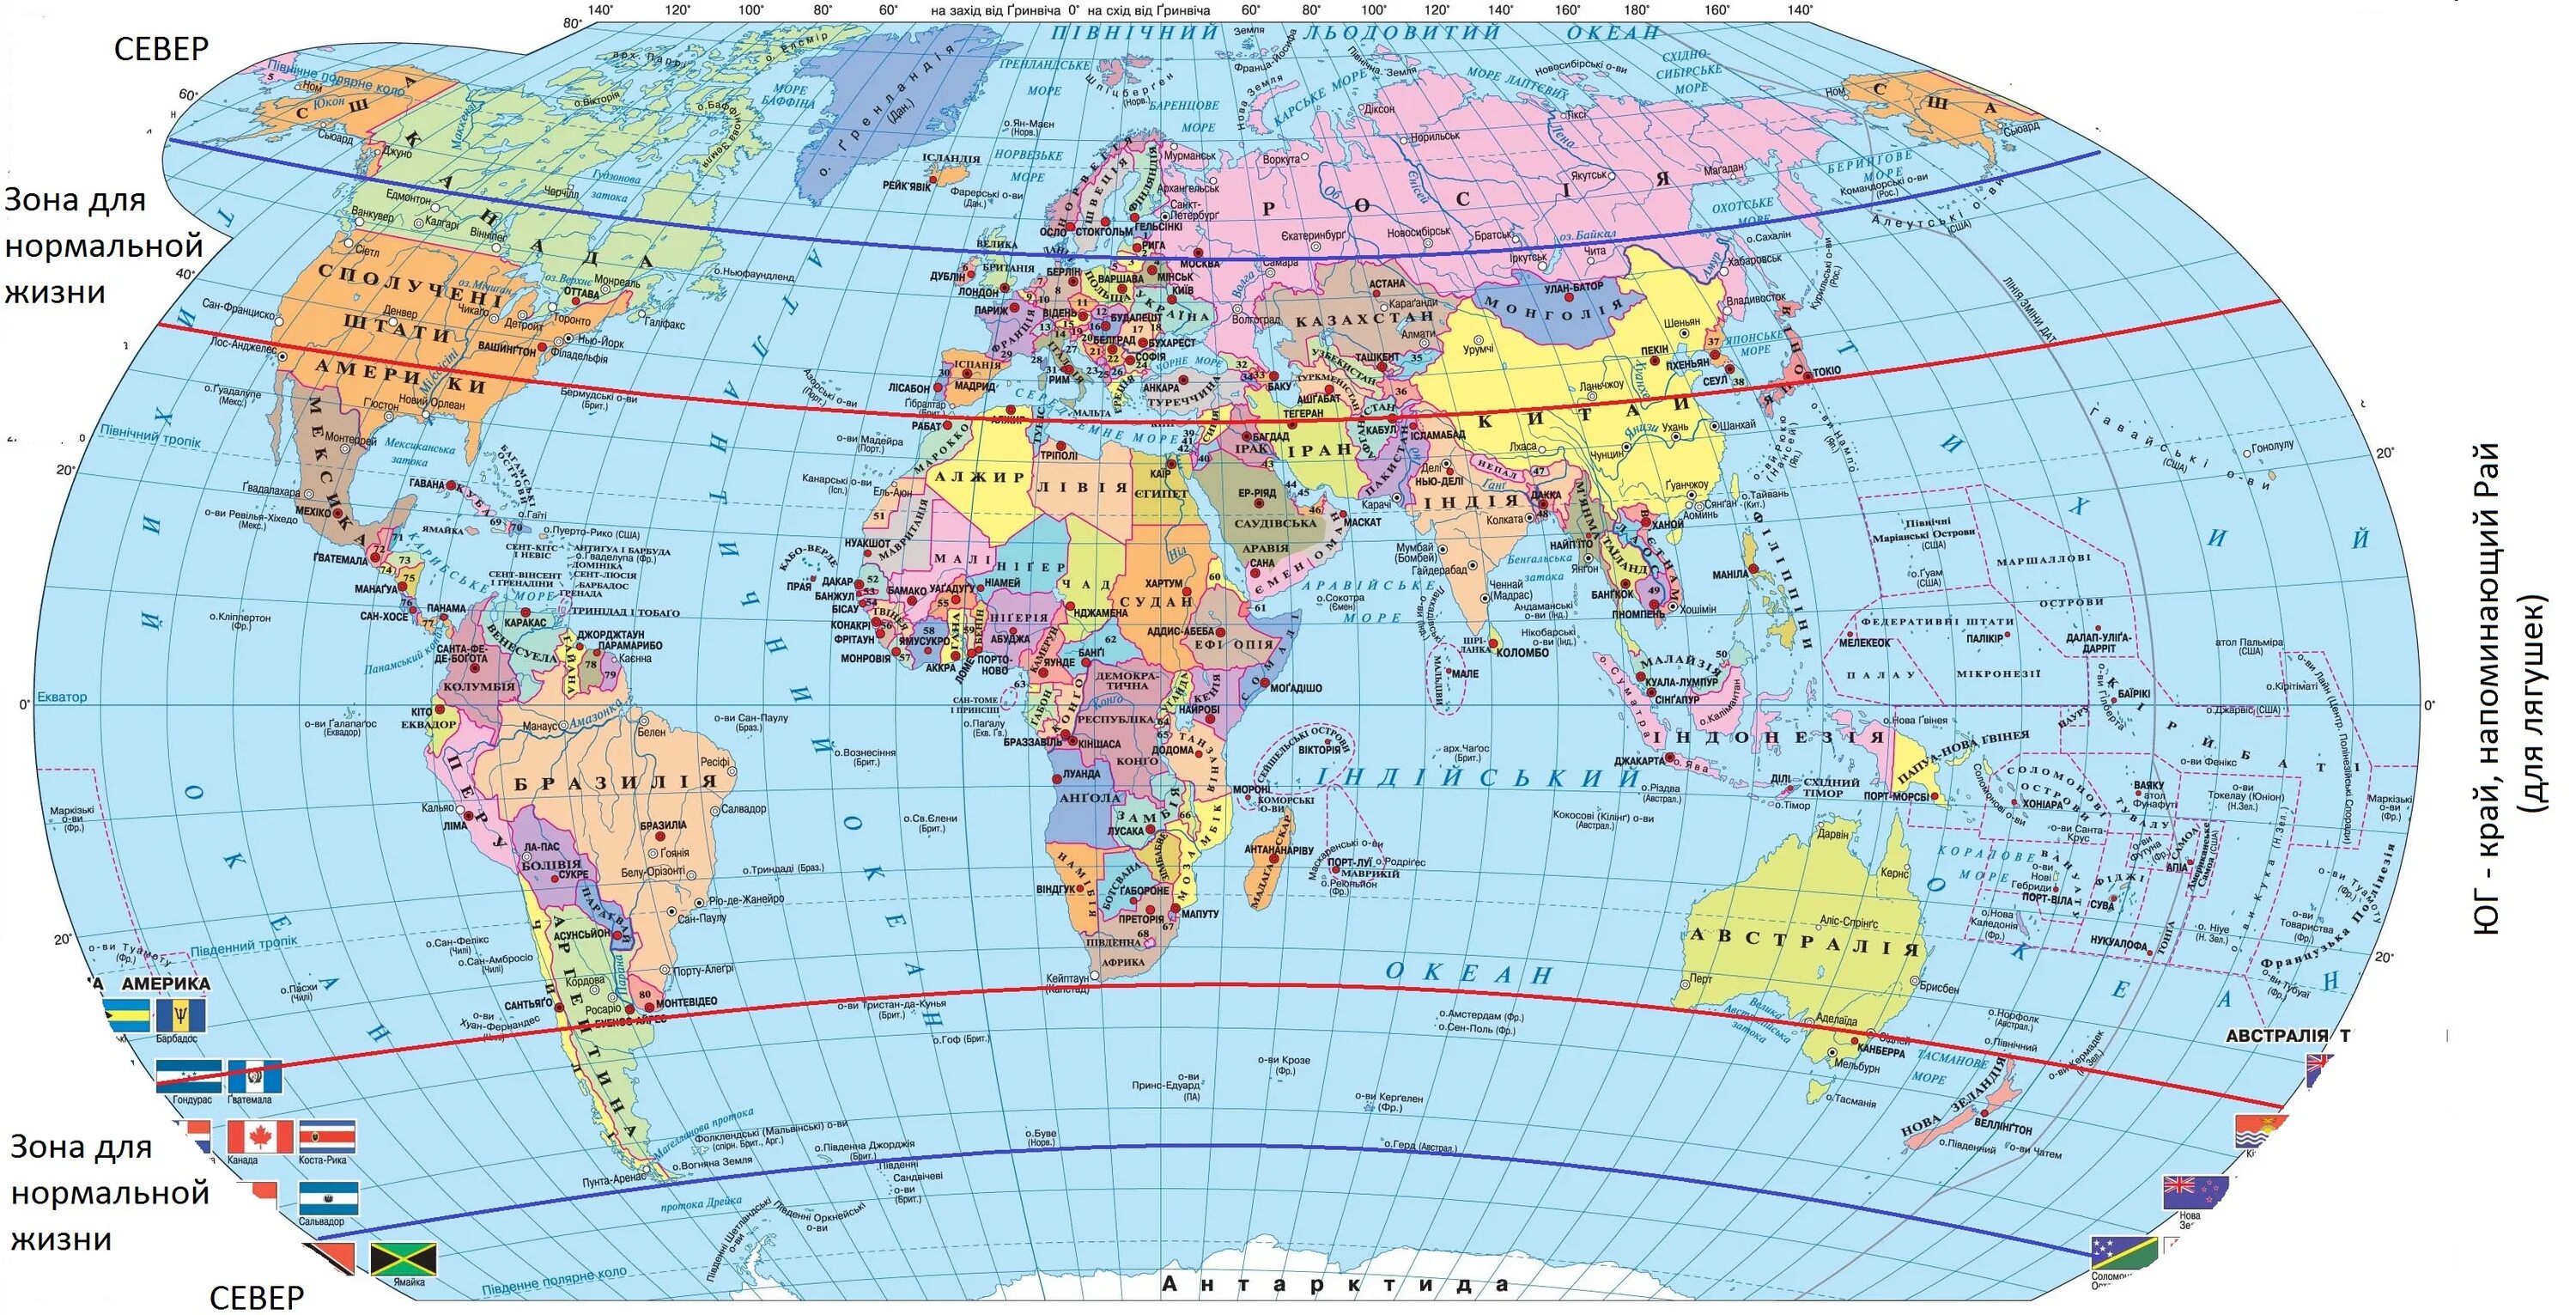 Полушария со странами. Карта Северного полушария со странами. Политическая карта полушарий. Карта Северного полушария со странами крупно на русском. Политическая карта Северного полушария.